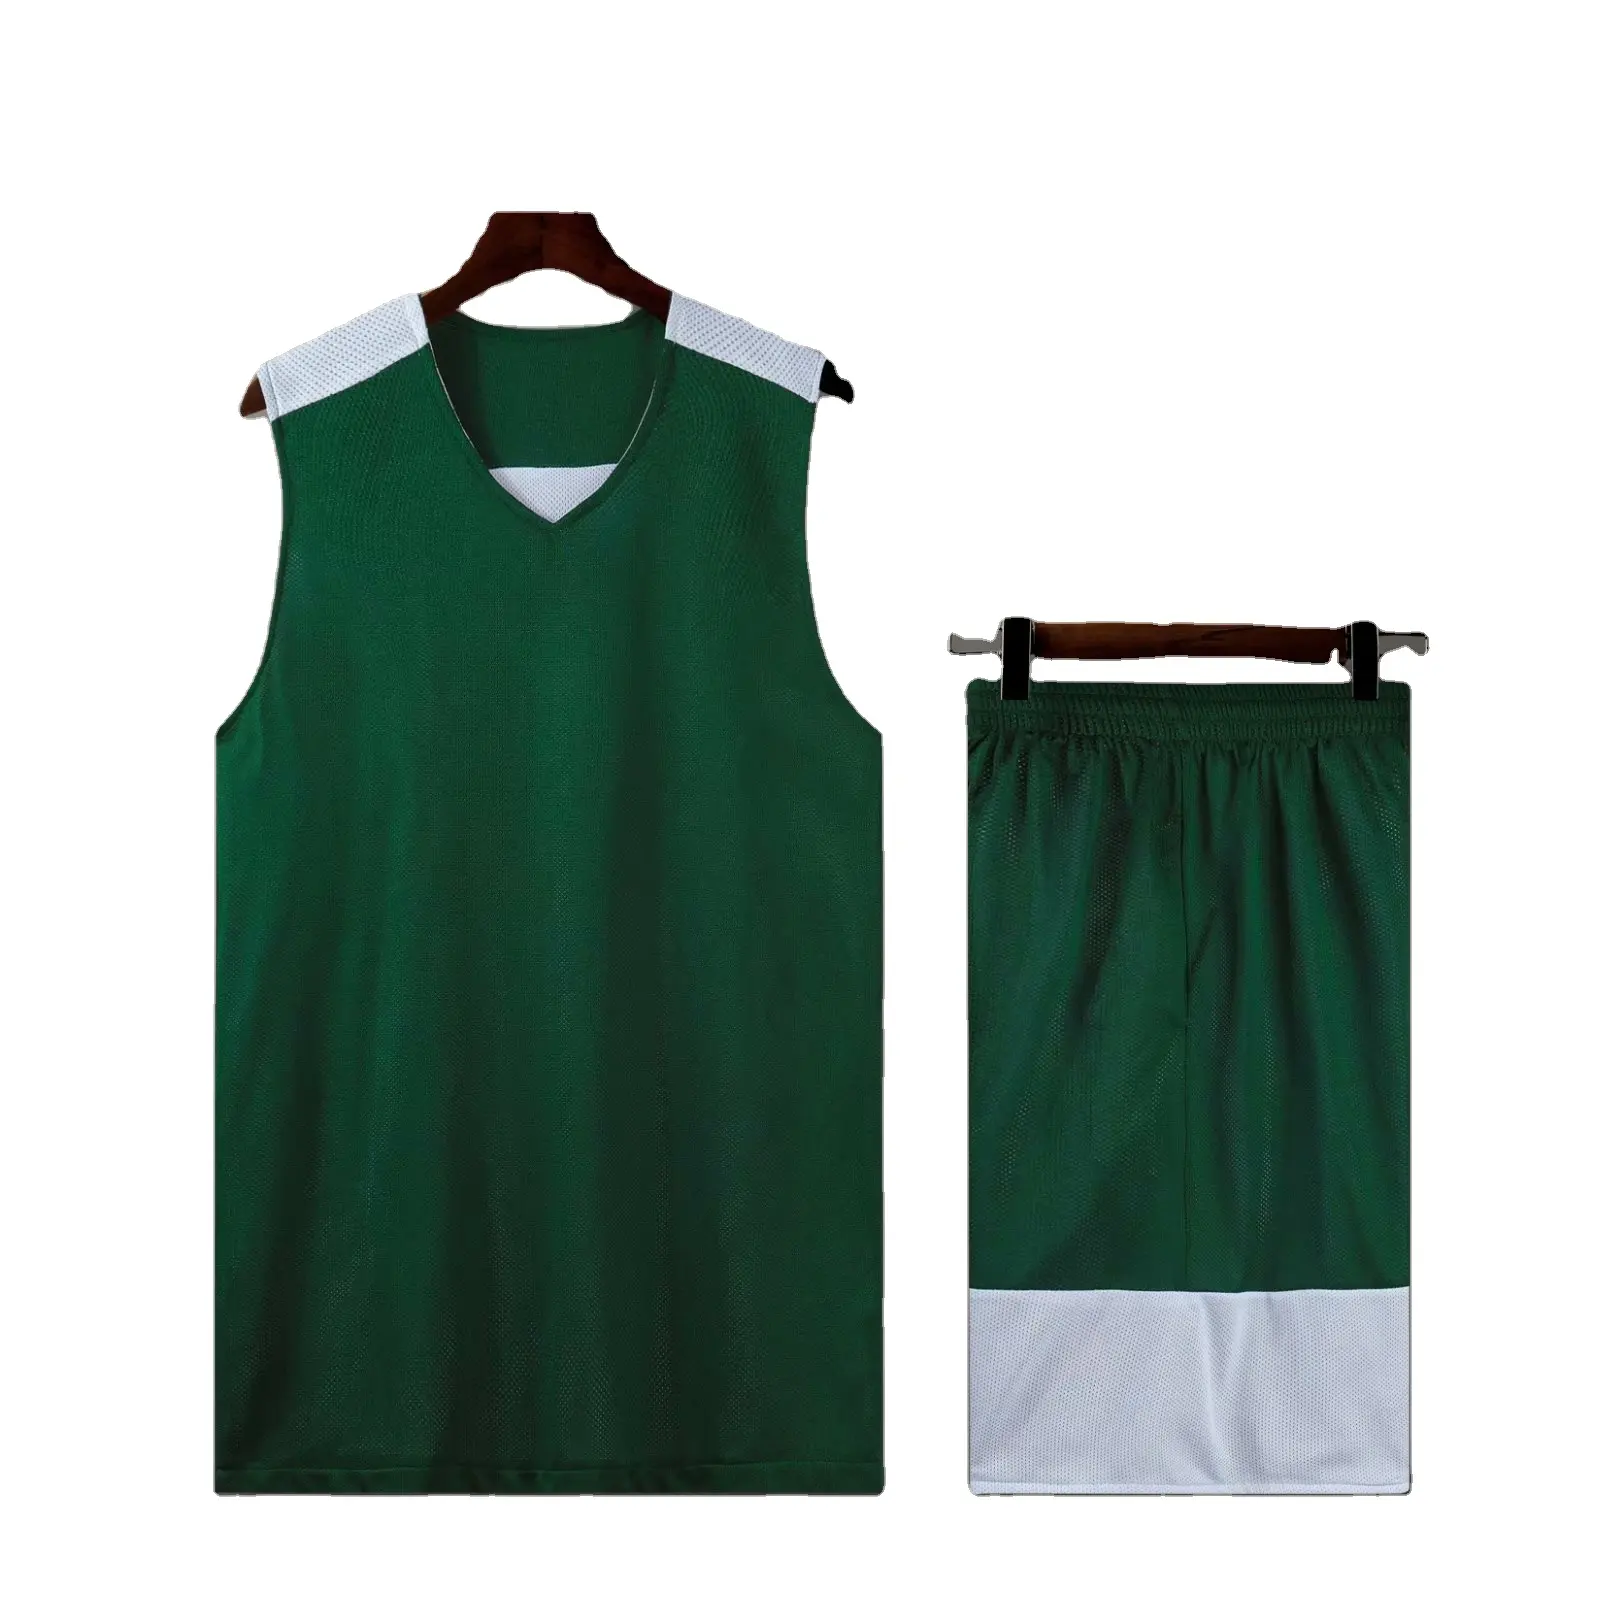 Uniformi in poliestere di alta qualità ad asciugatura rapida giovani in bianco con logo che aggiunge uniformi da basket reversibili personalizzabili